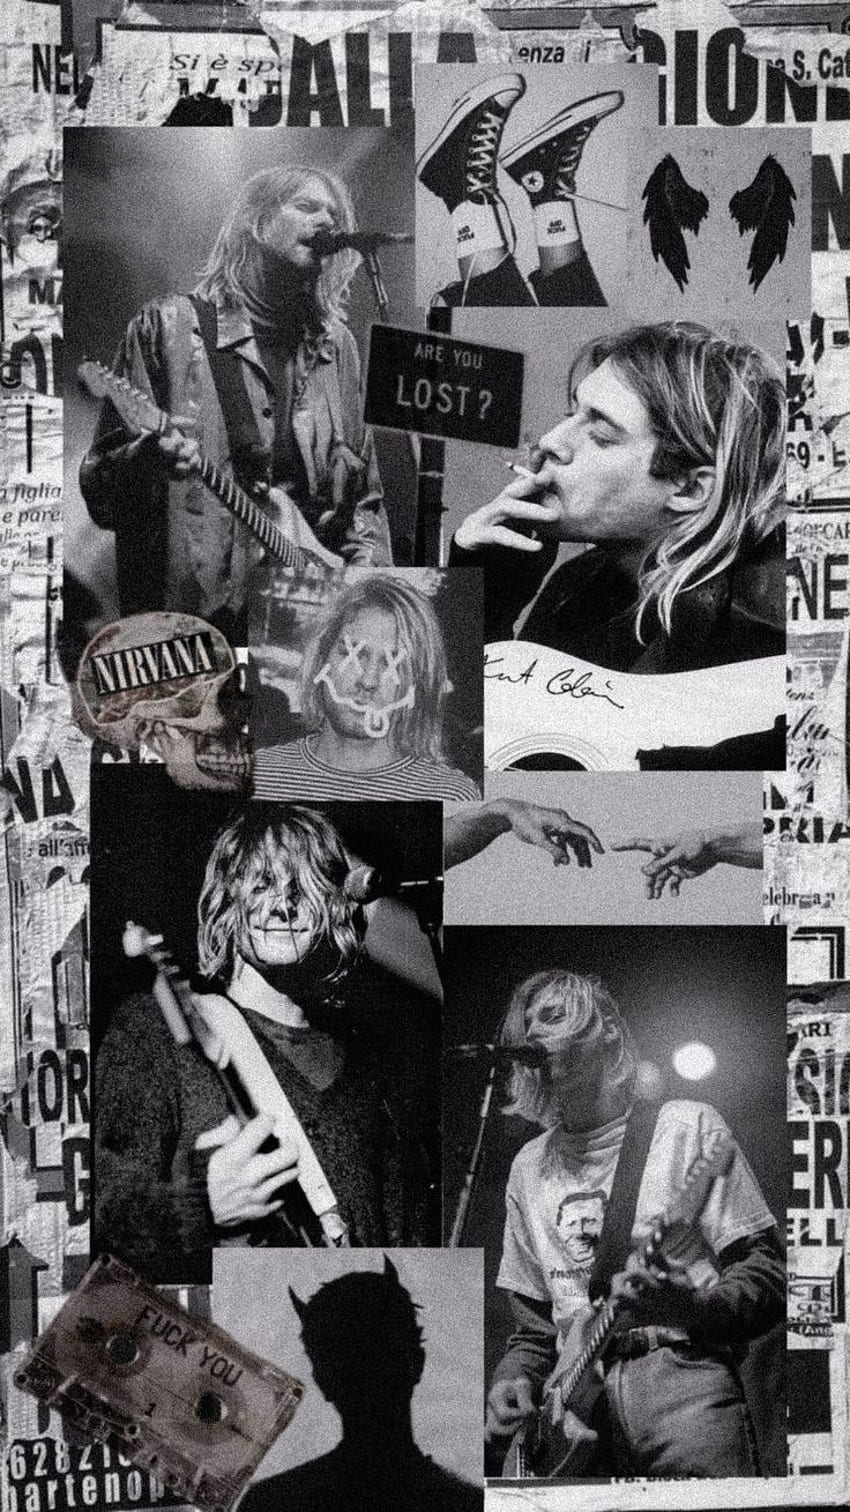 Estetika Kurt Cobain hitam dan putih. Nirvana , Nirvana, poster Nirvana, Estetika Nirvana wallpaper ponsel HD